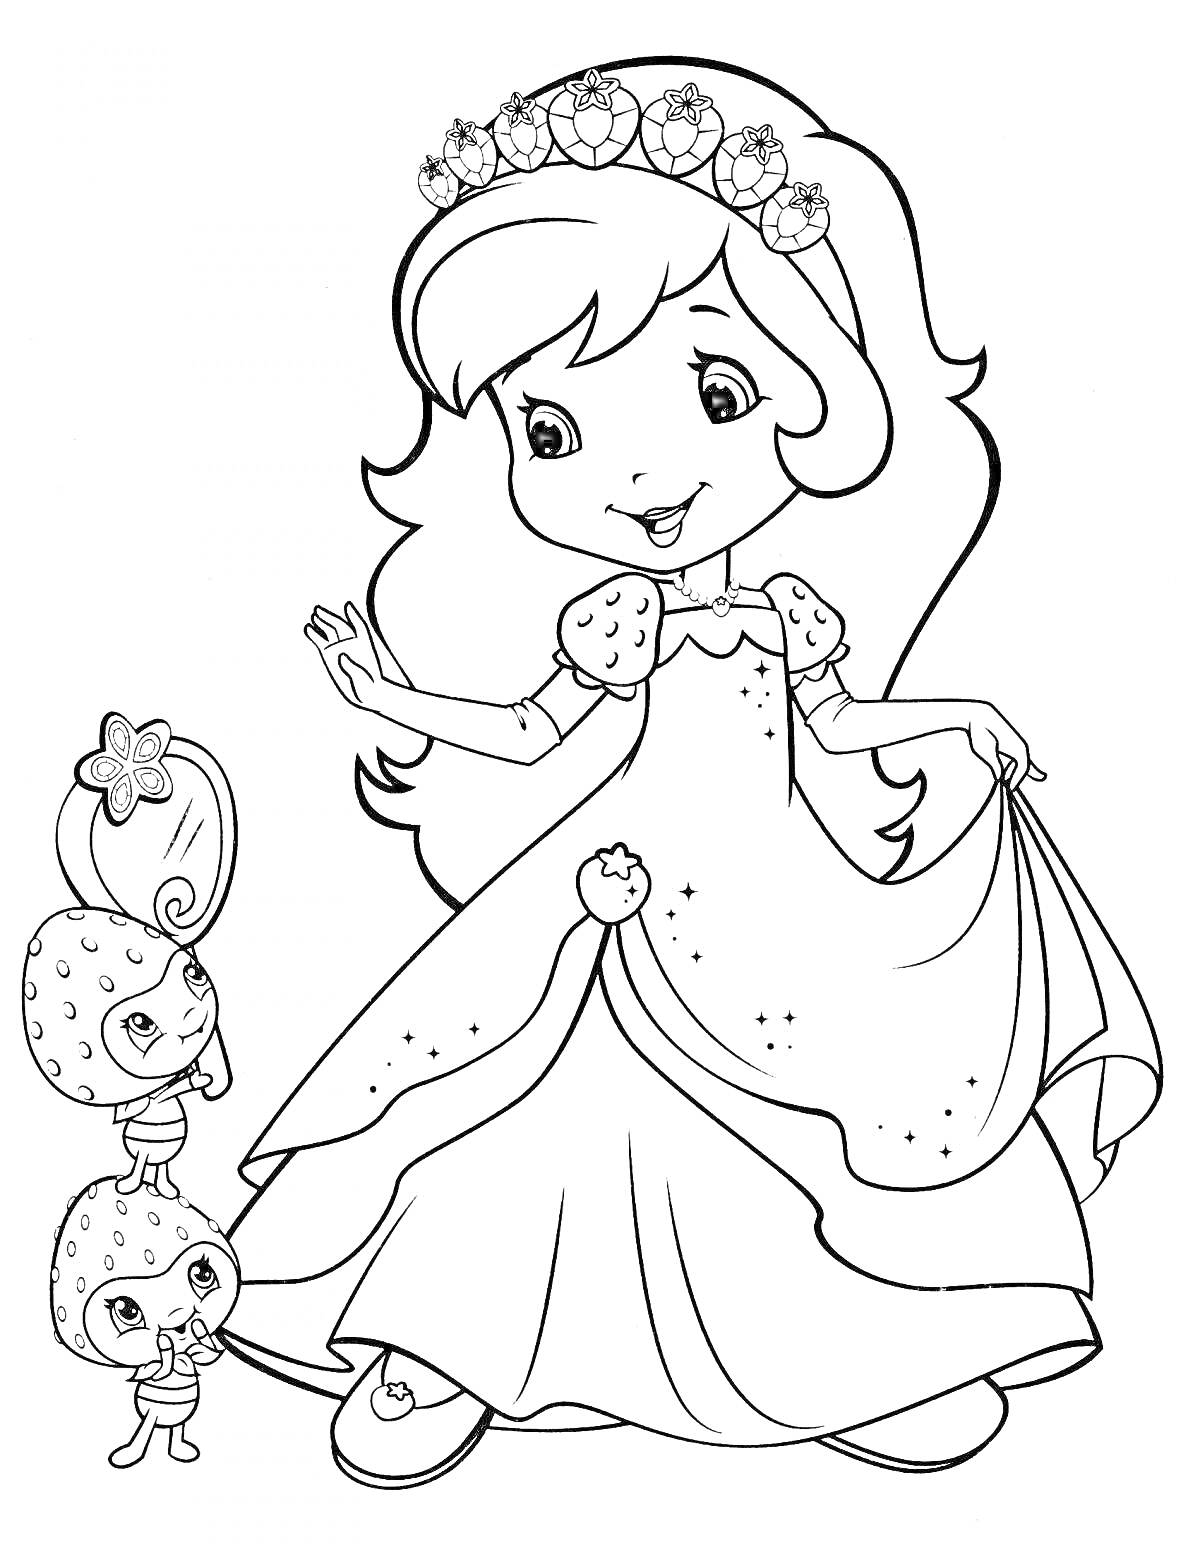 Принцесса с цветочной короной и ягодными персонажами держит платье